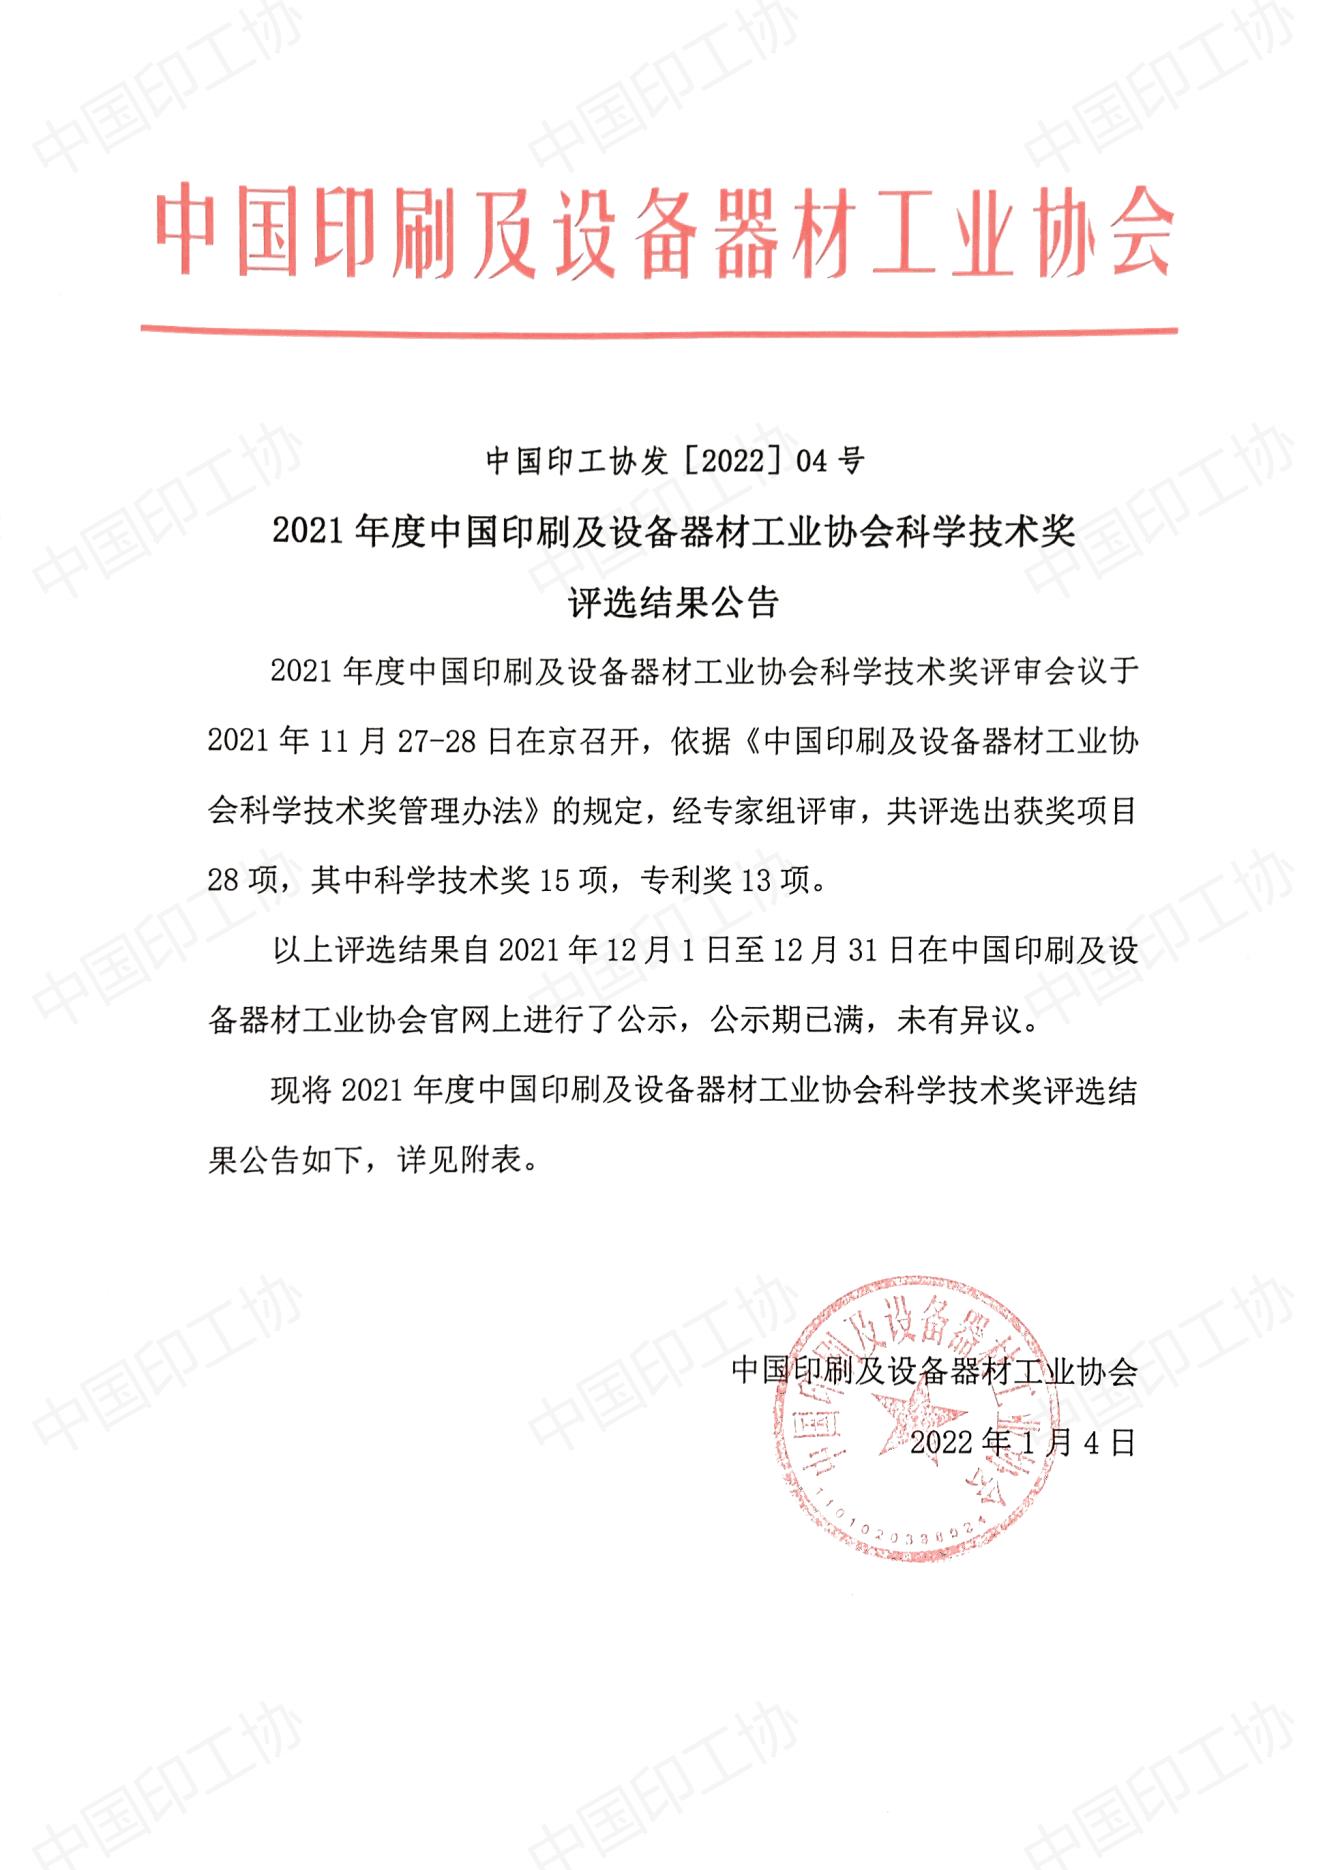 2021年度中国印刷及设备器材工业协会科学技术奖评选结果公告